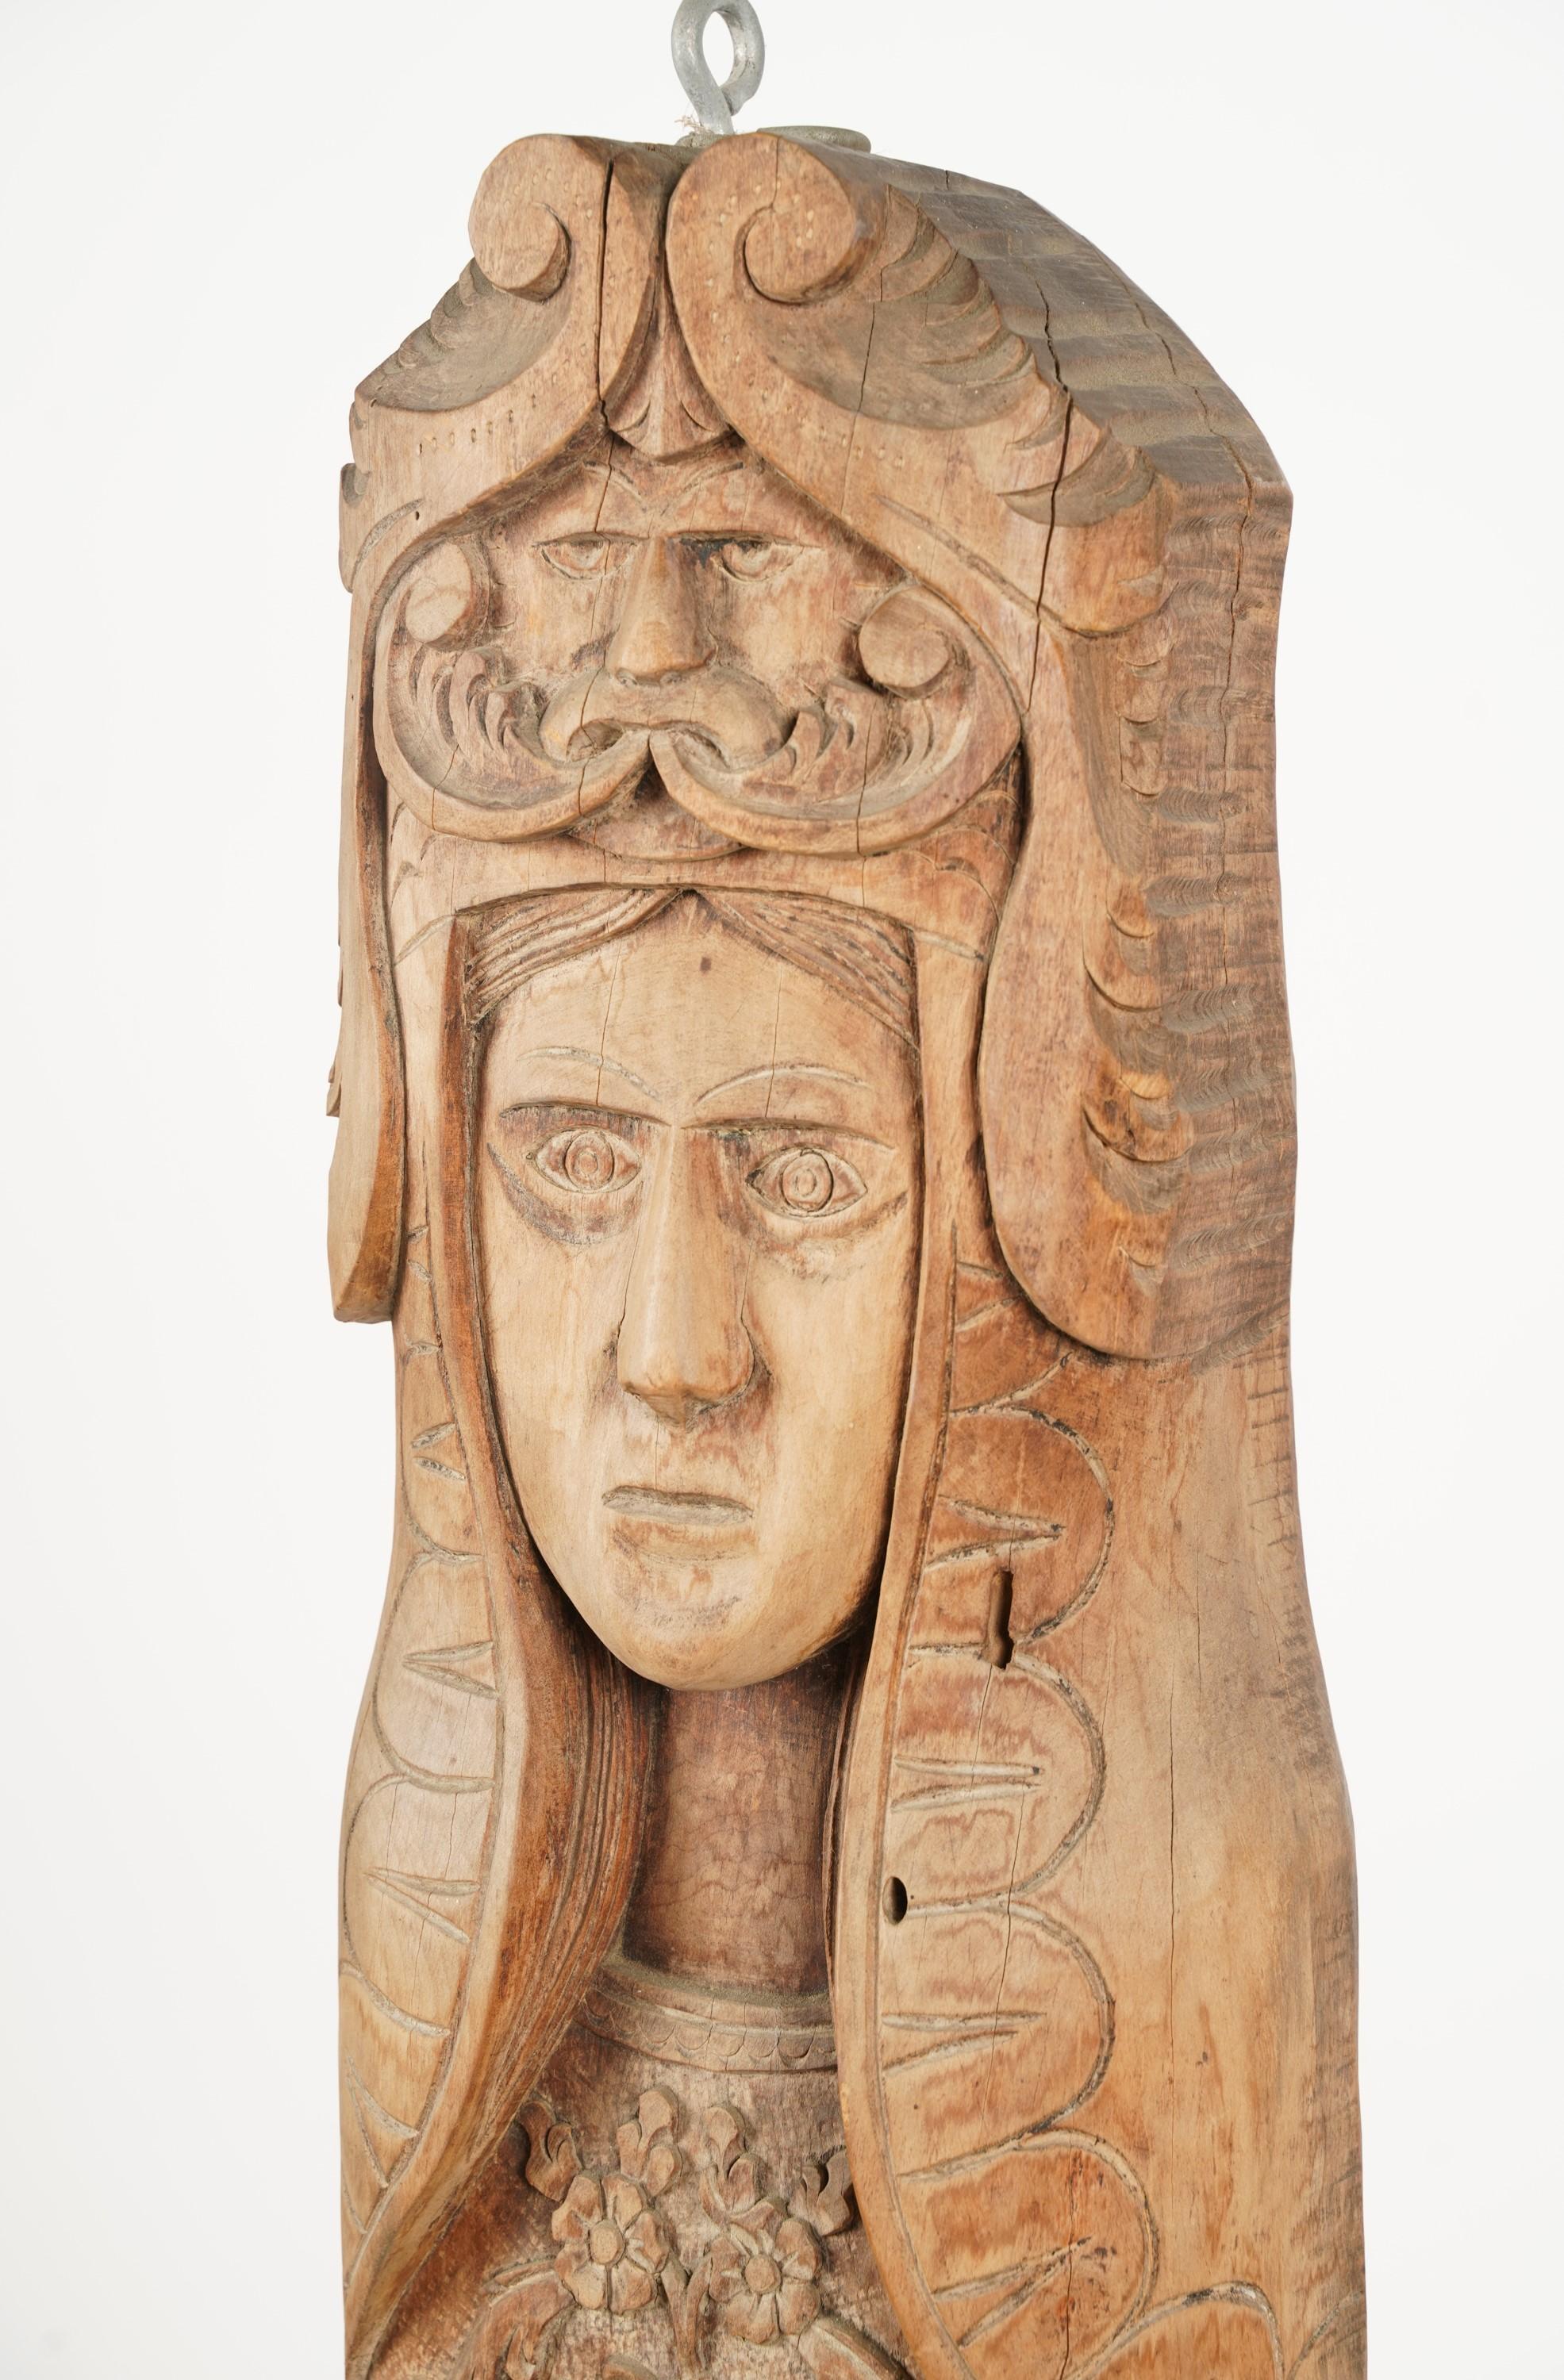 pagan wood carvings